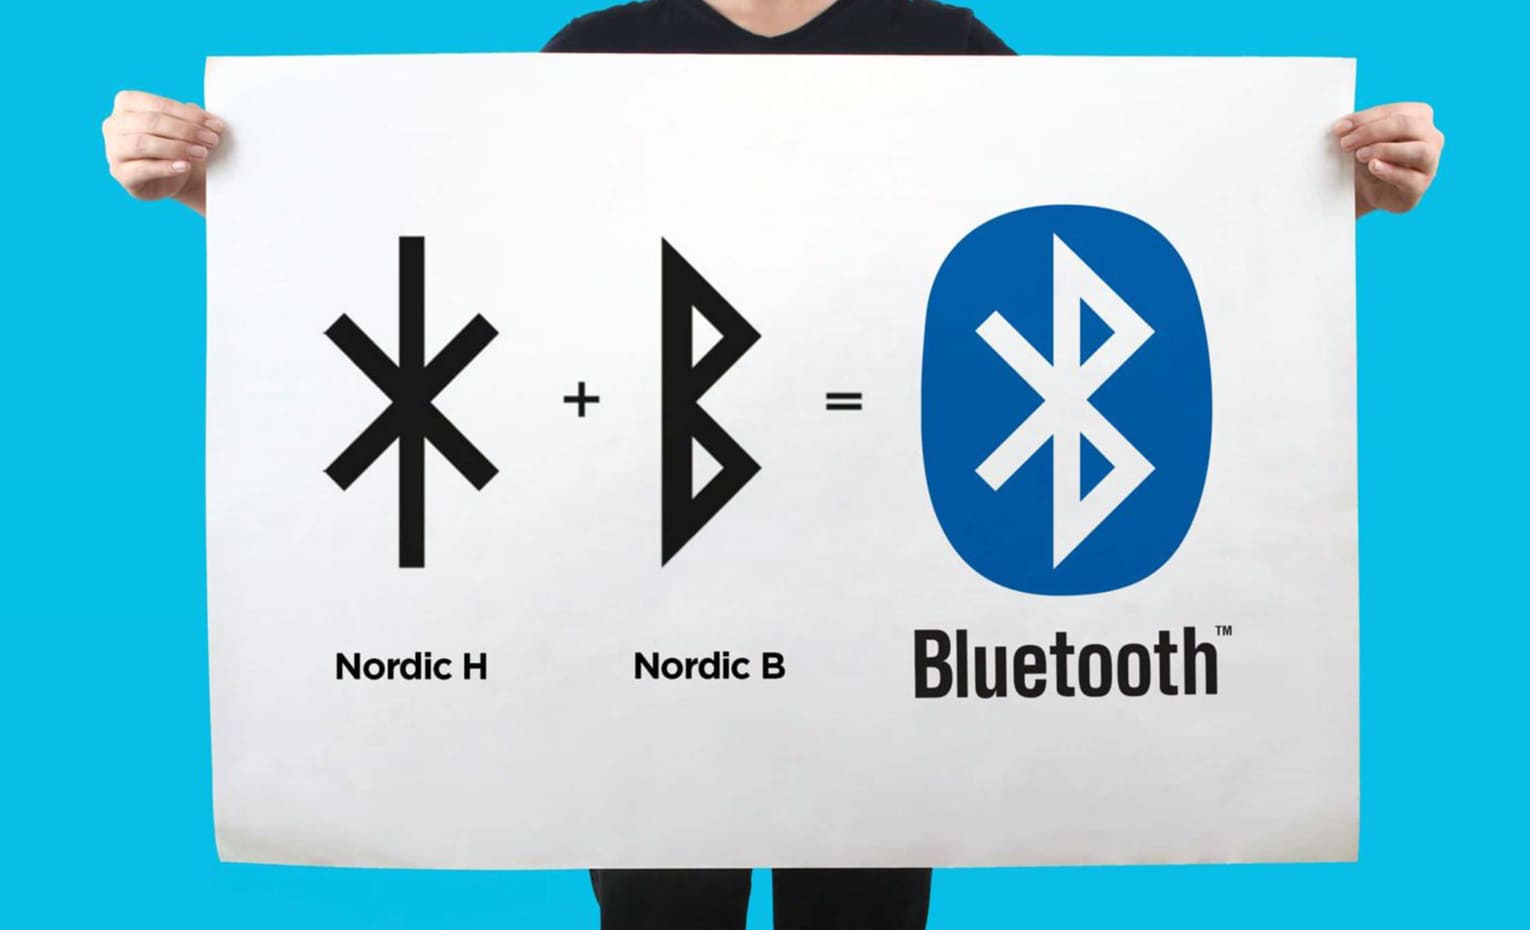 تاریخچه بلوتوث | Bluetooth History